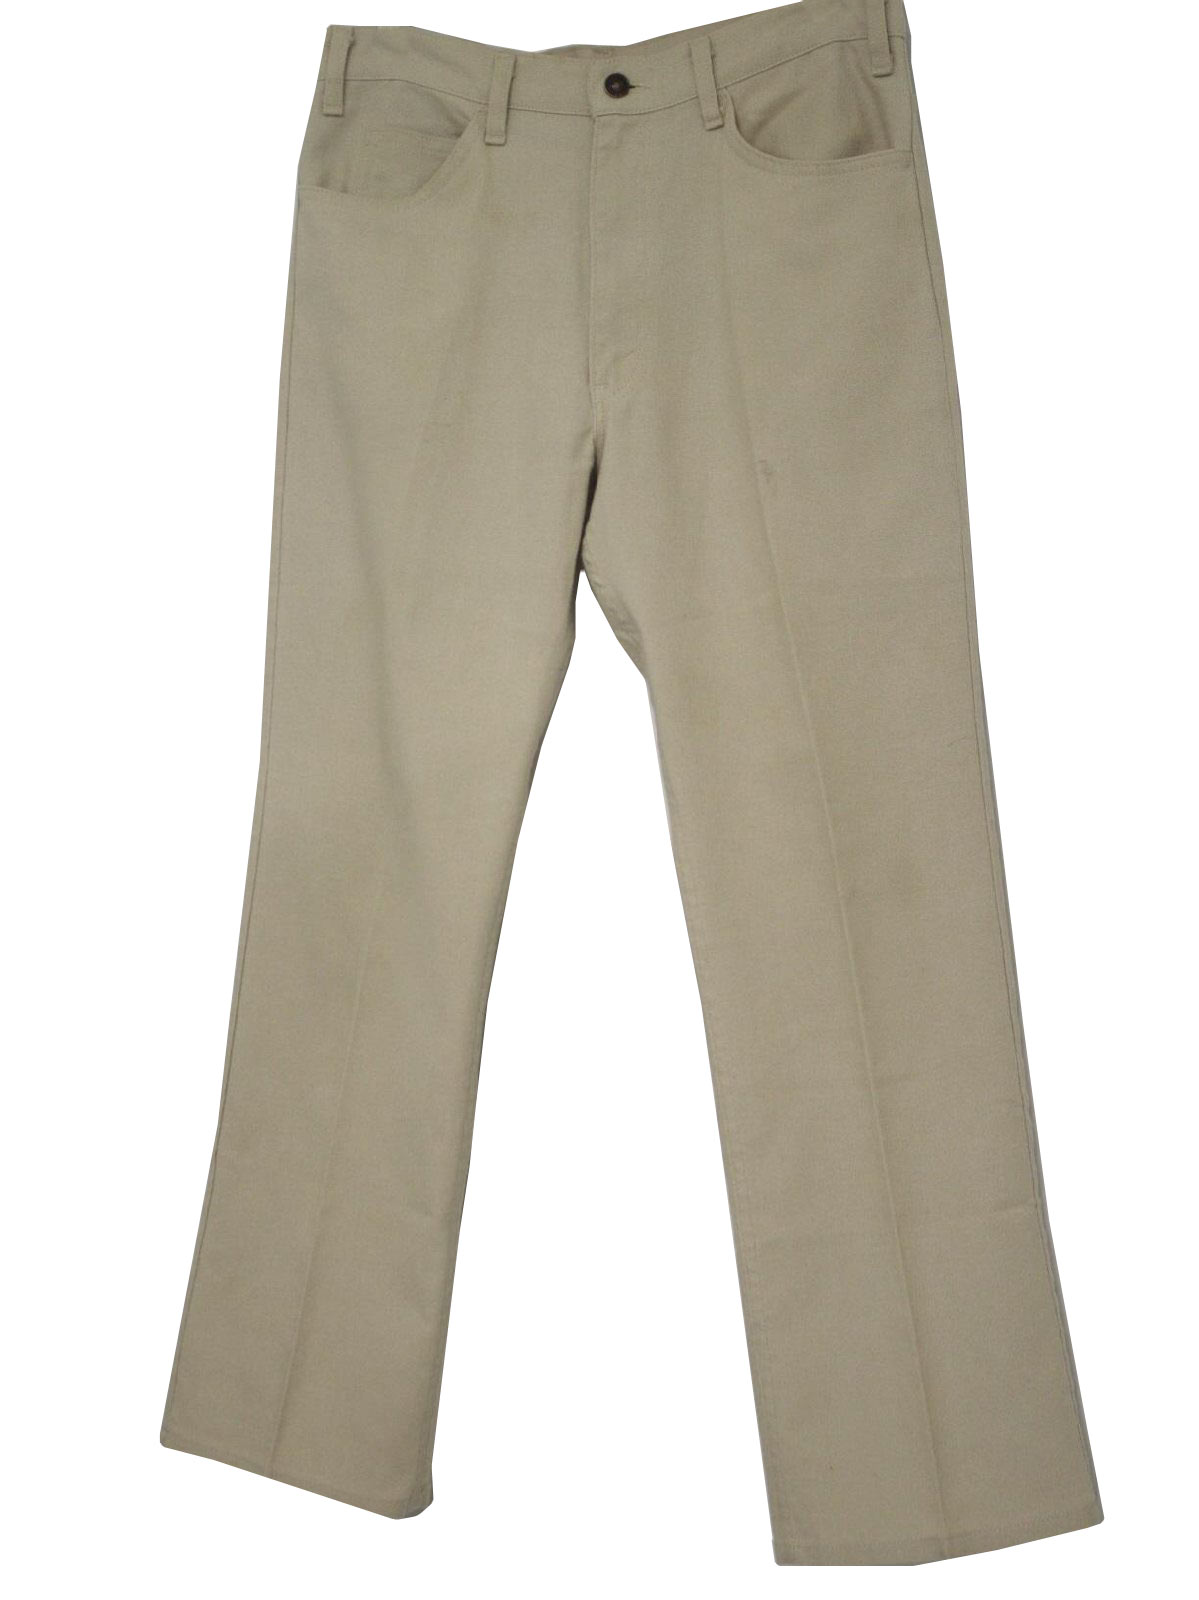 Vintage 1970's Flared Pants / Flares: 70s -Levis Sta Prest- Mens beige ...